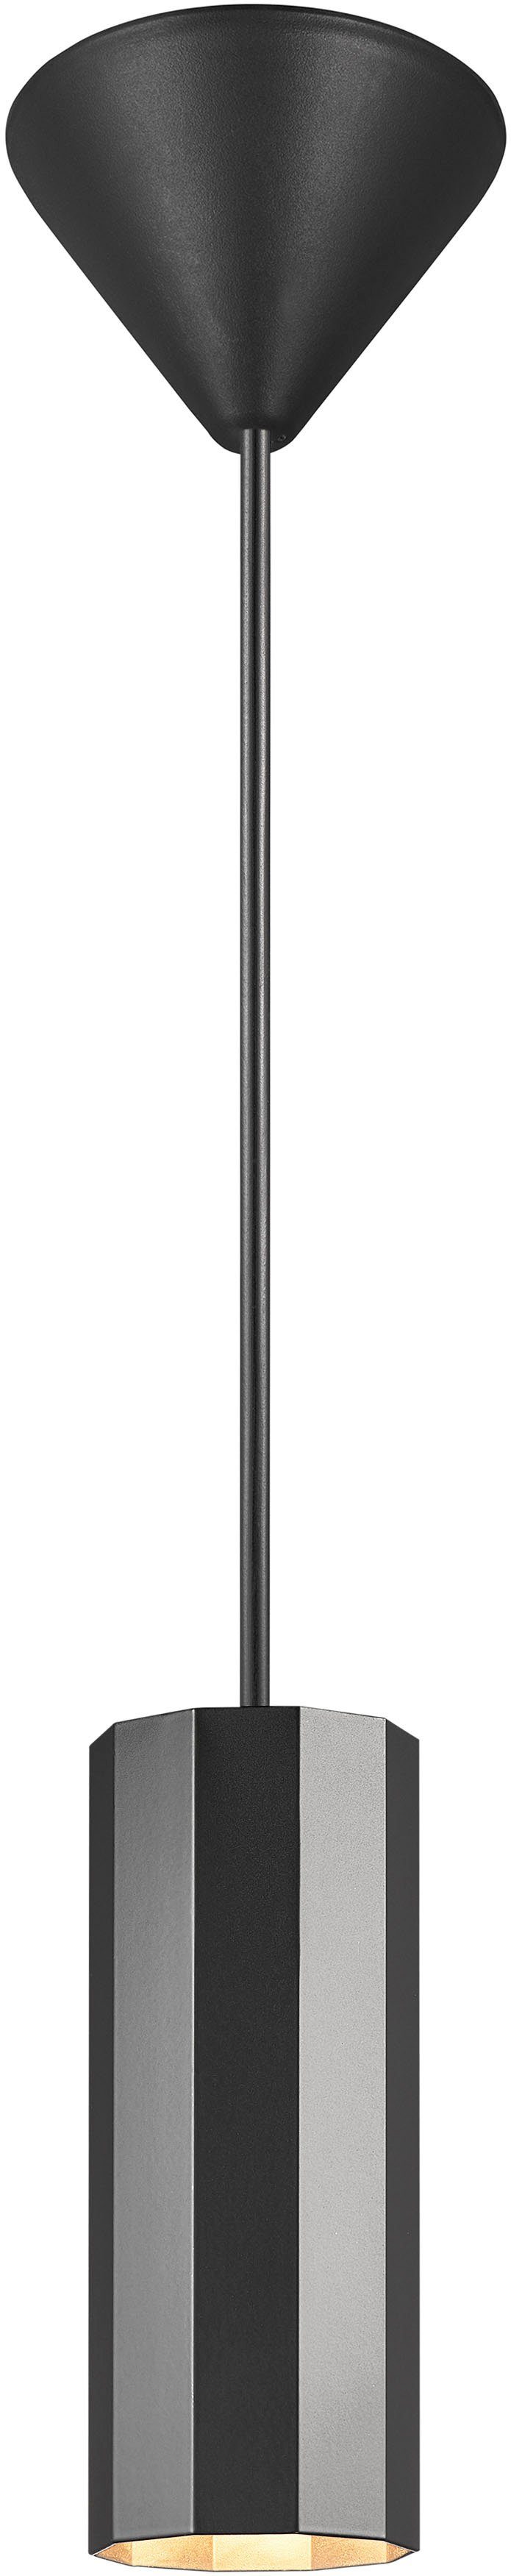 Nordlux Pendelleuchte Alanis, ohne Leuchtmittel, Profil, matter Minimalistisches Design, 10-seitiges Messing-Look